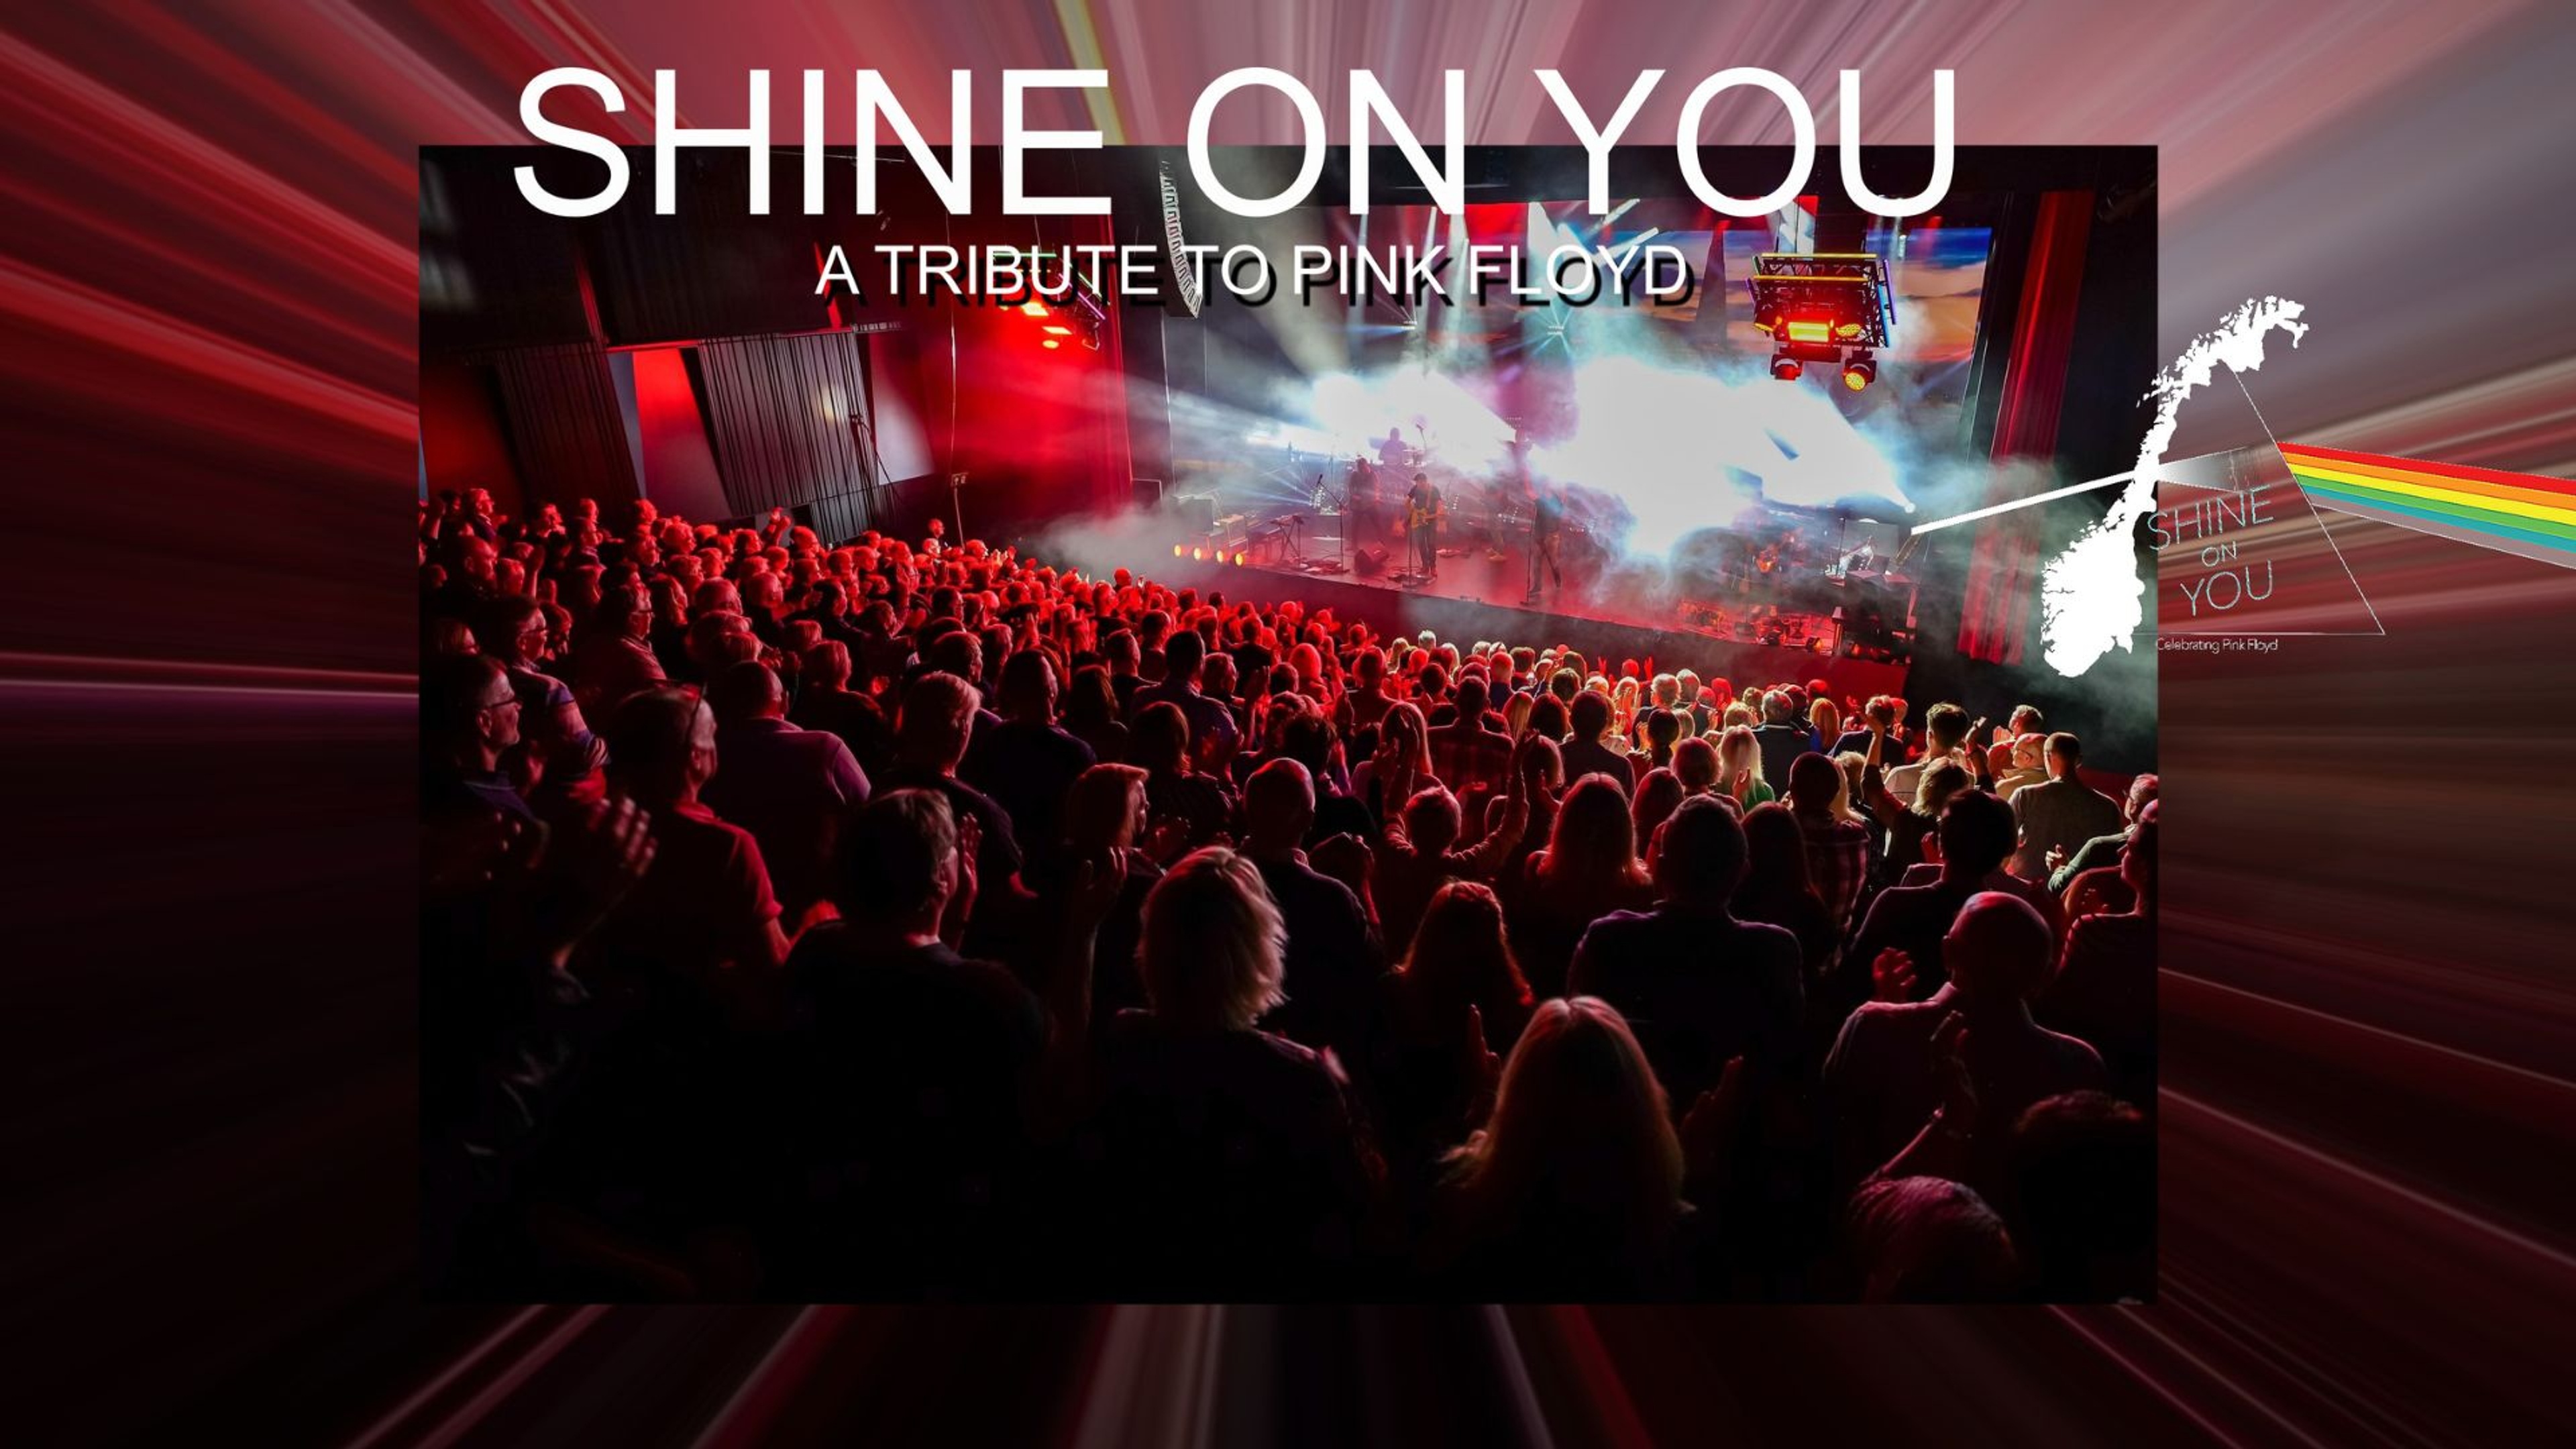 Ett publikhav framför scenen där bandet står och spelar. Text: Shine on you, A tribute to Pink Floyd.